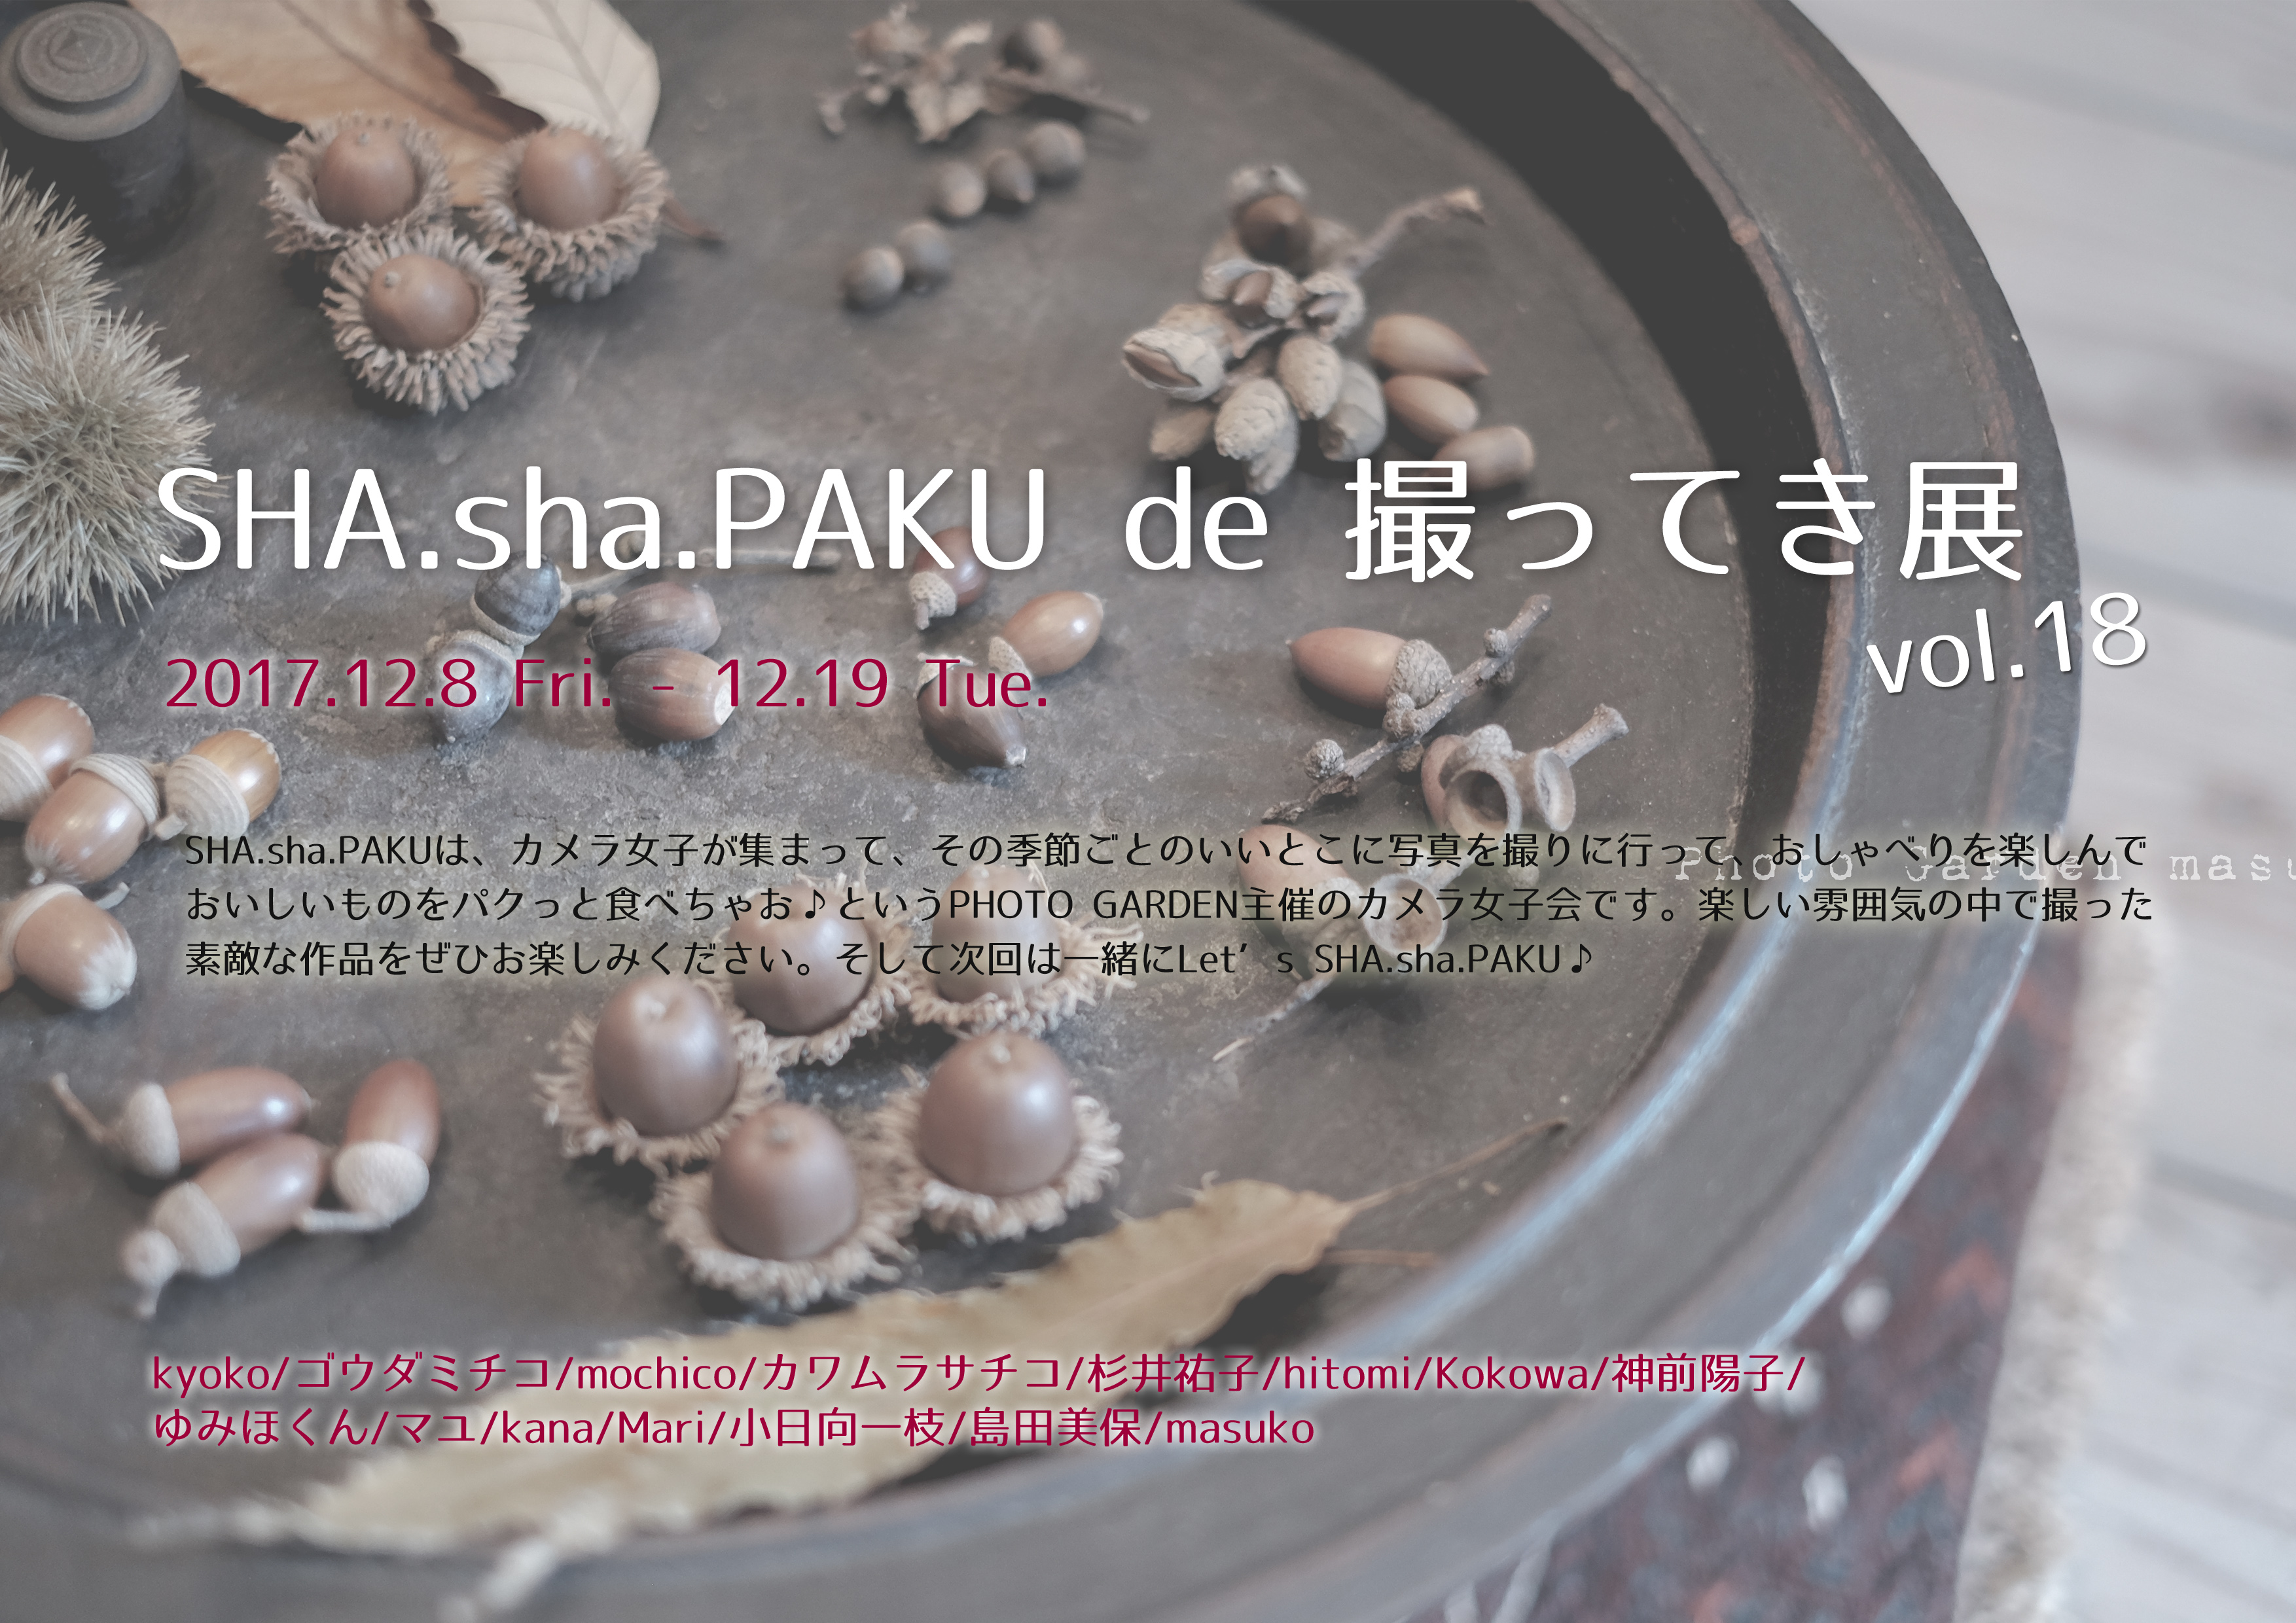 「SHA.sha.PAKU de 撮ってき展 vol.18」